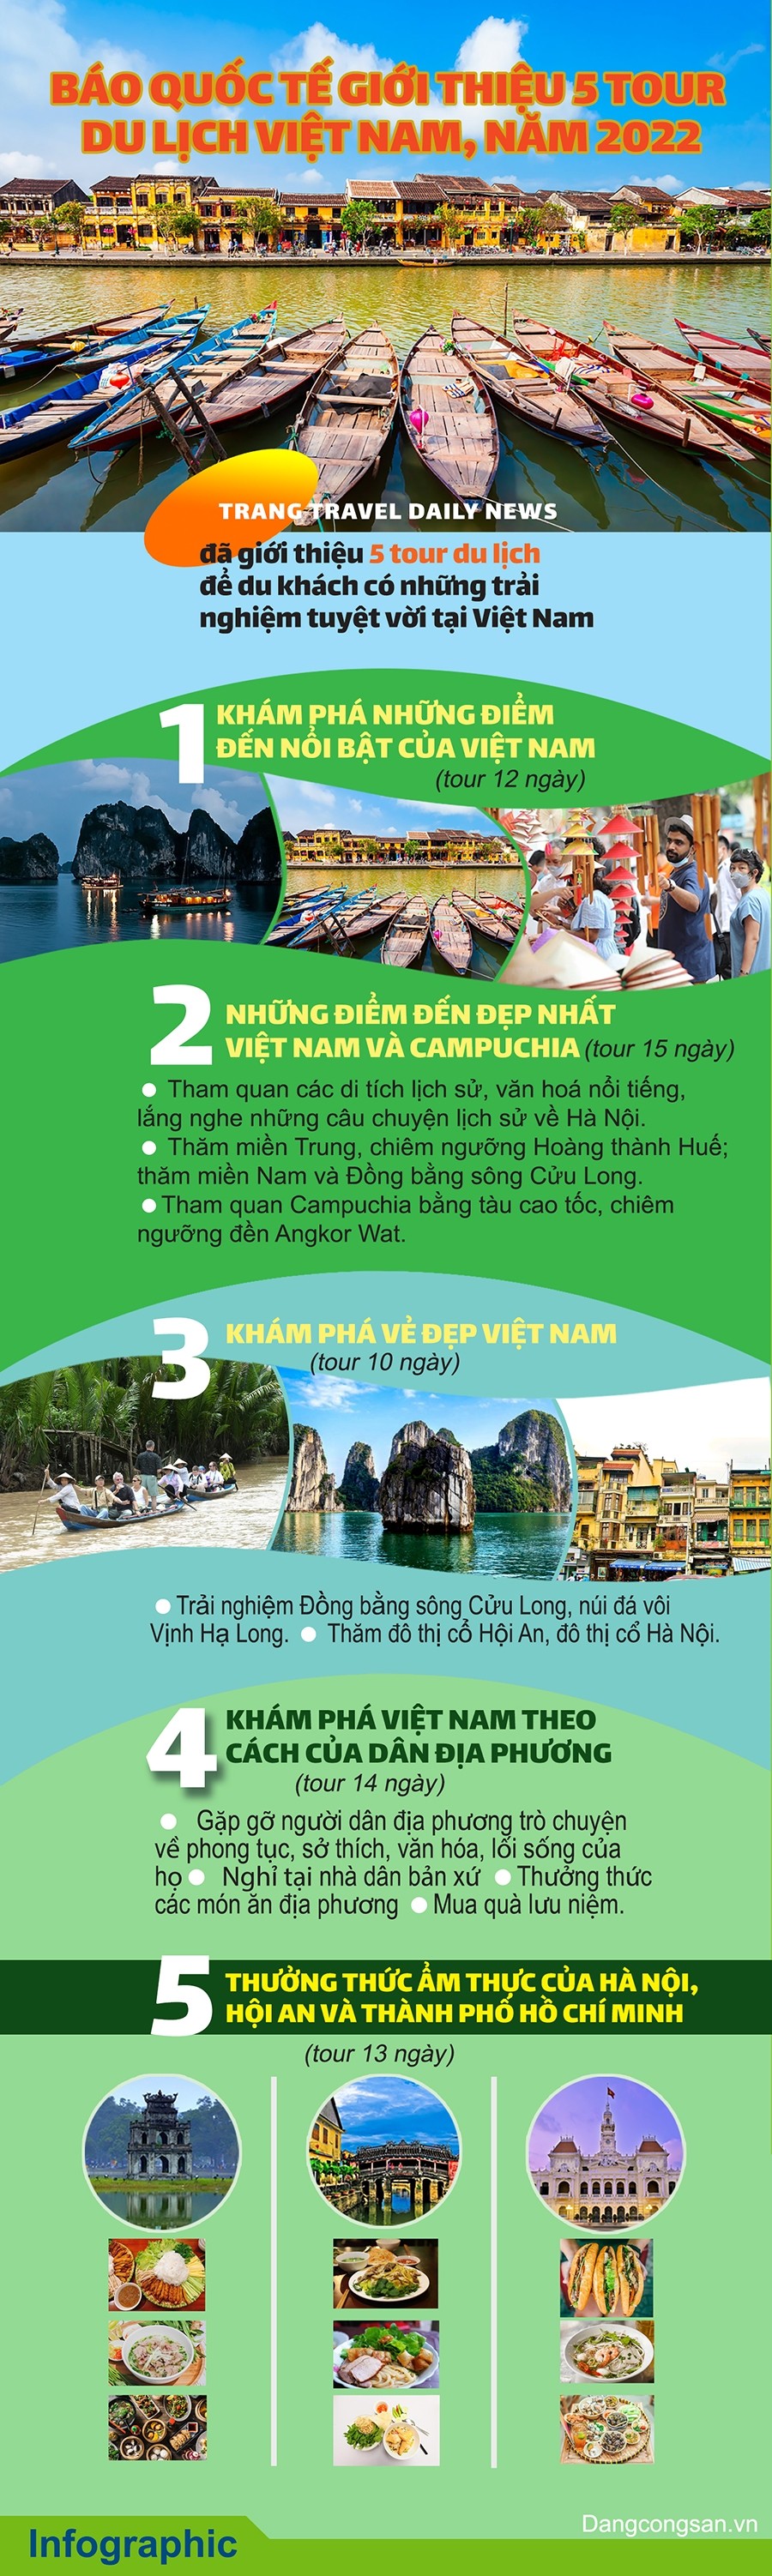 Báo quốc tế giới thiệu 5 tour du lịch Việt Nam năm 2022